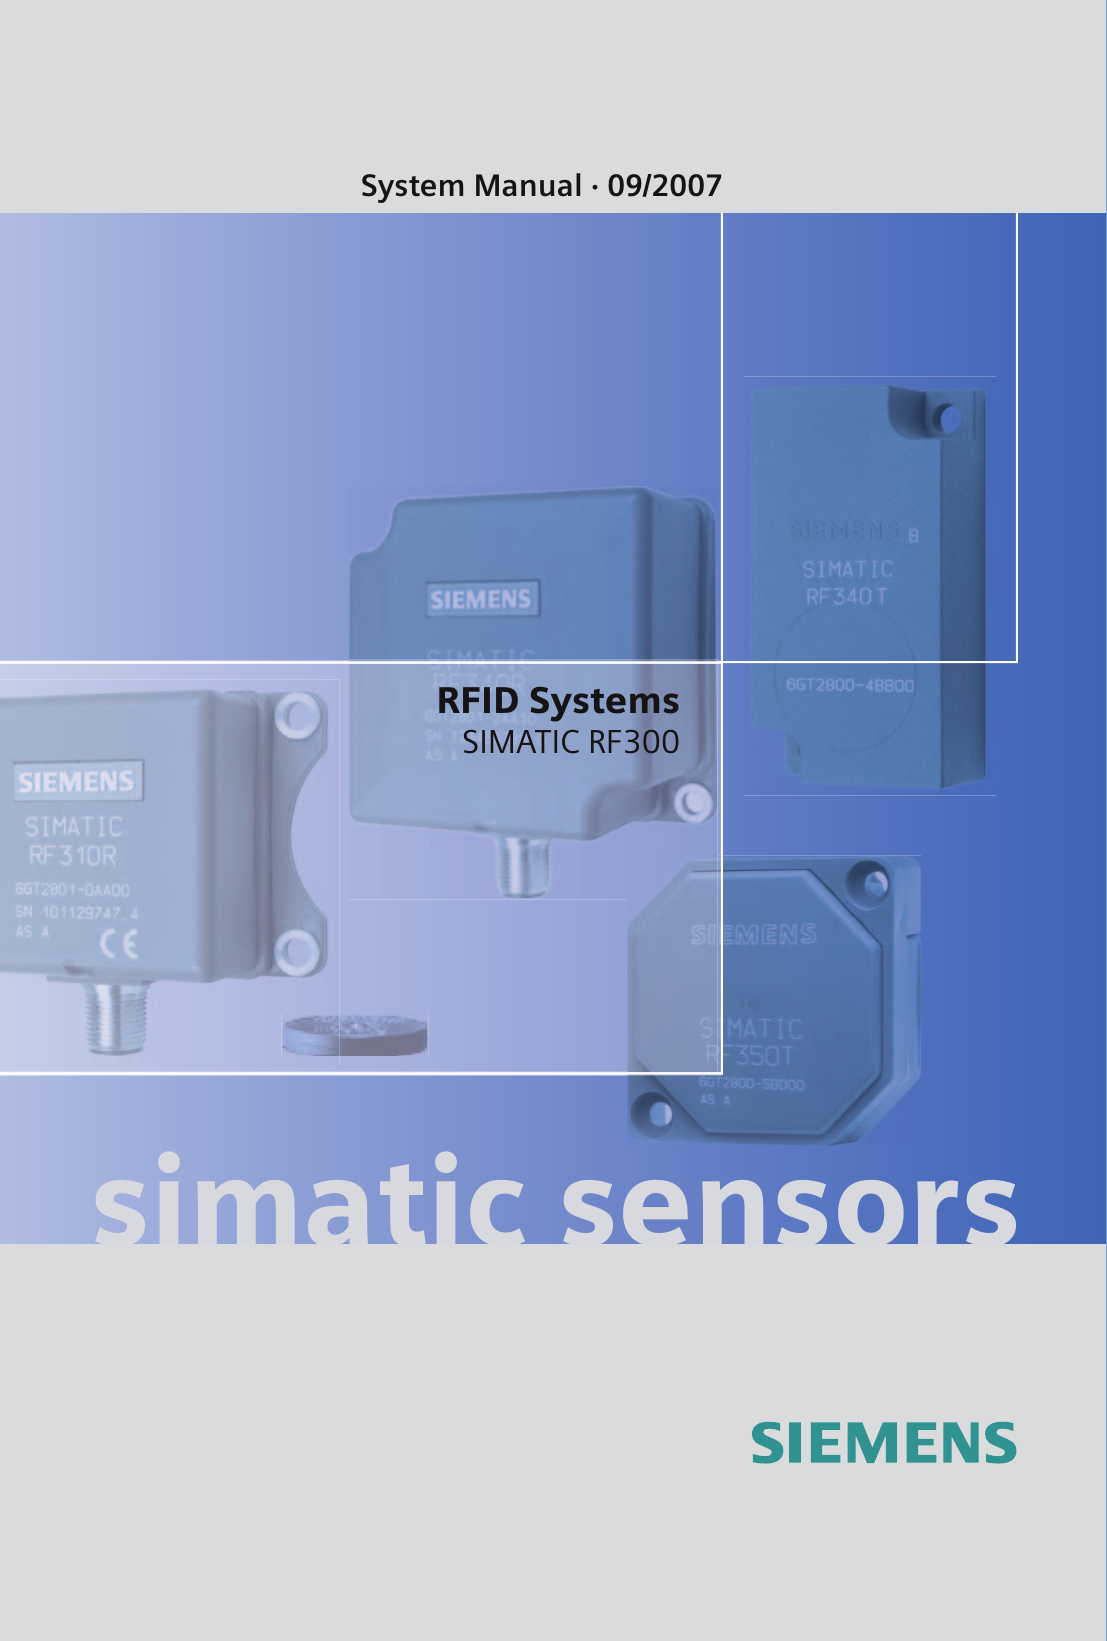 SIMATIC Sensors RFID systems SIMATIC RF300 RFID SystemsSIMATIC RF300System Manual · 09/2007simatic sensors